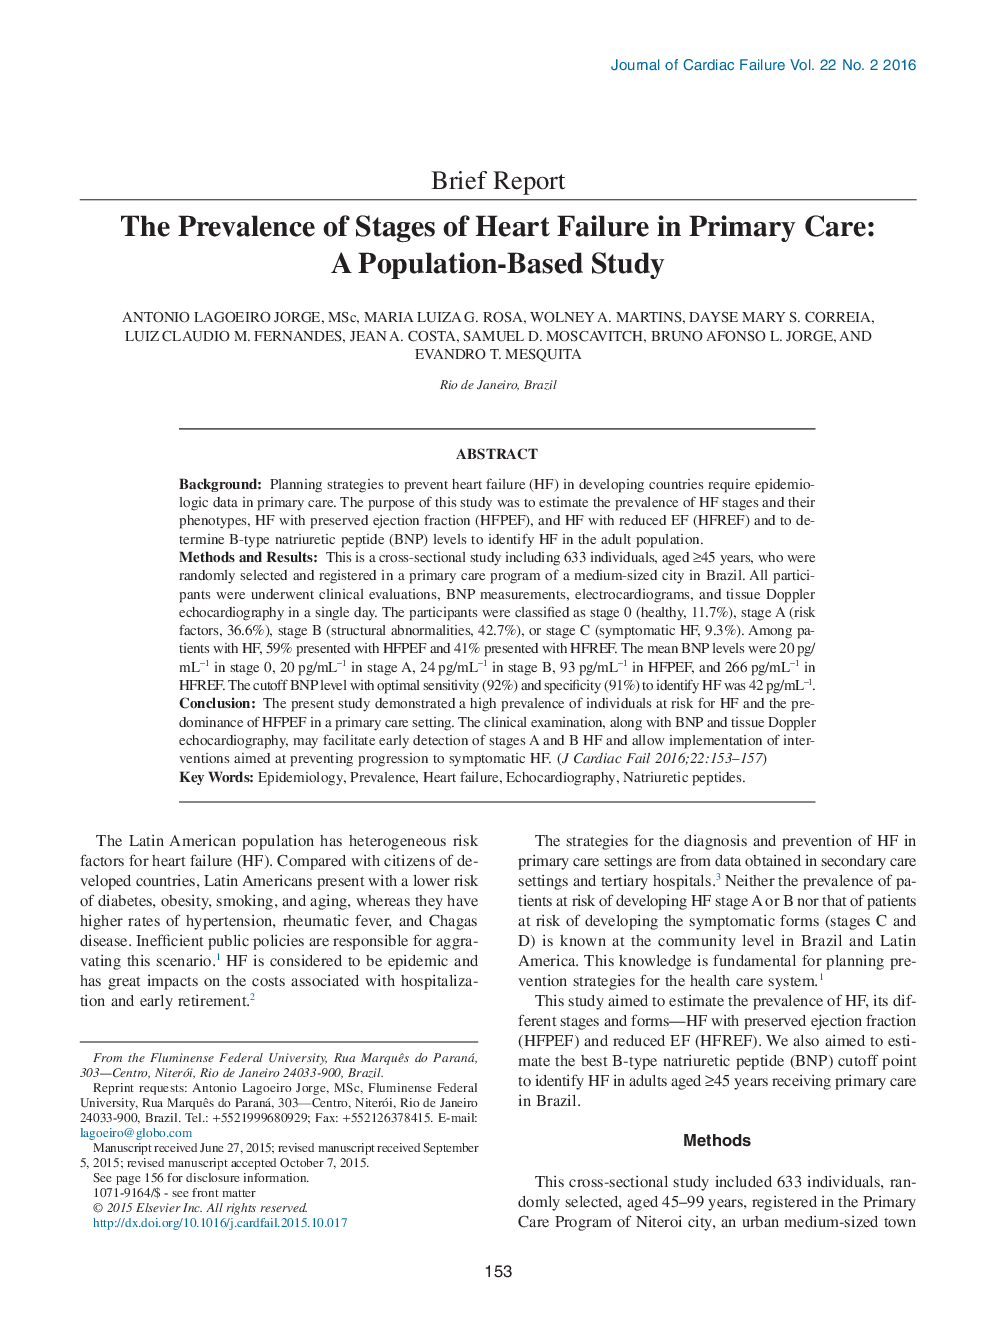 شیوع مراحل نارسایی قلبی در مراقبت های اولیه: مطالعه مبتنی بر جمعیت 